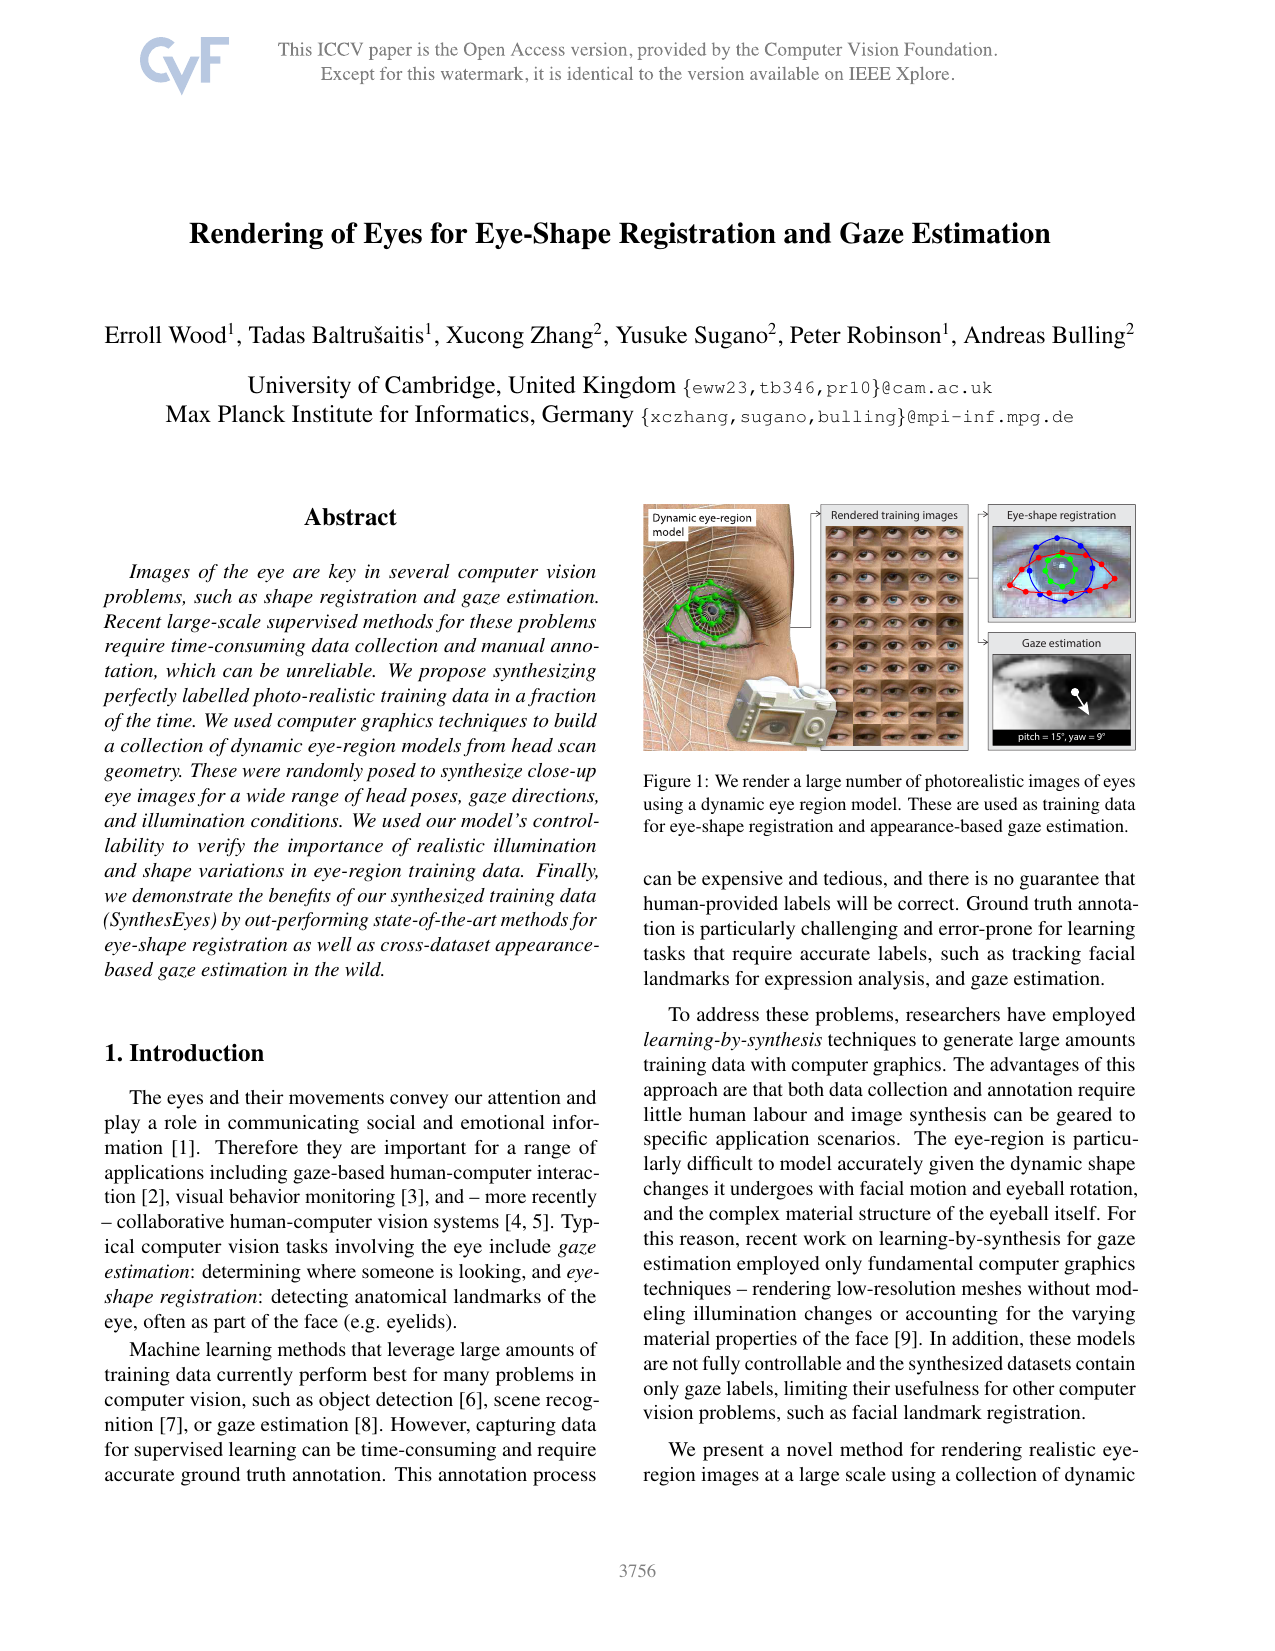 Rendering of Eyes for Eye-Shape Registration and Gaze Estimation